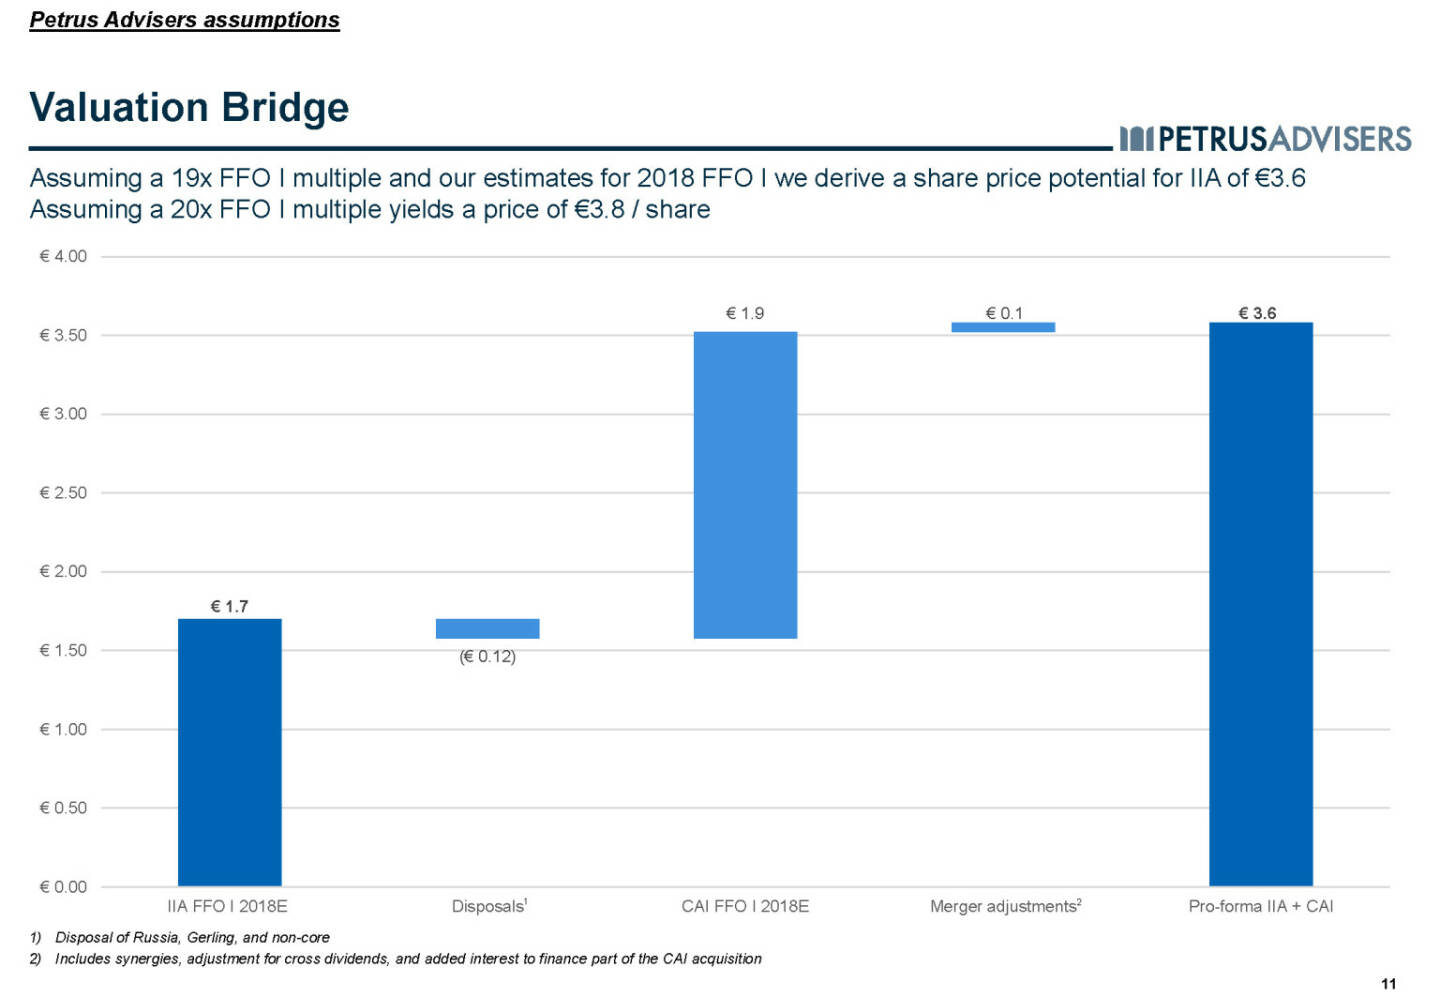 Valuation Bridge - Petrus Advisers